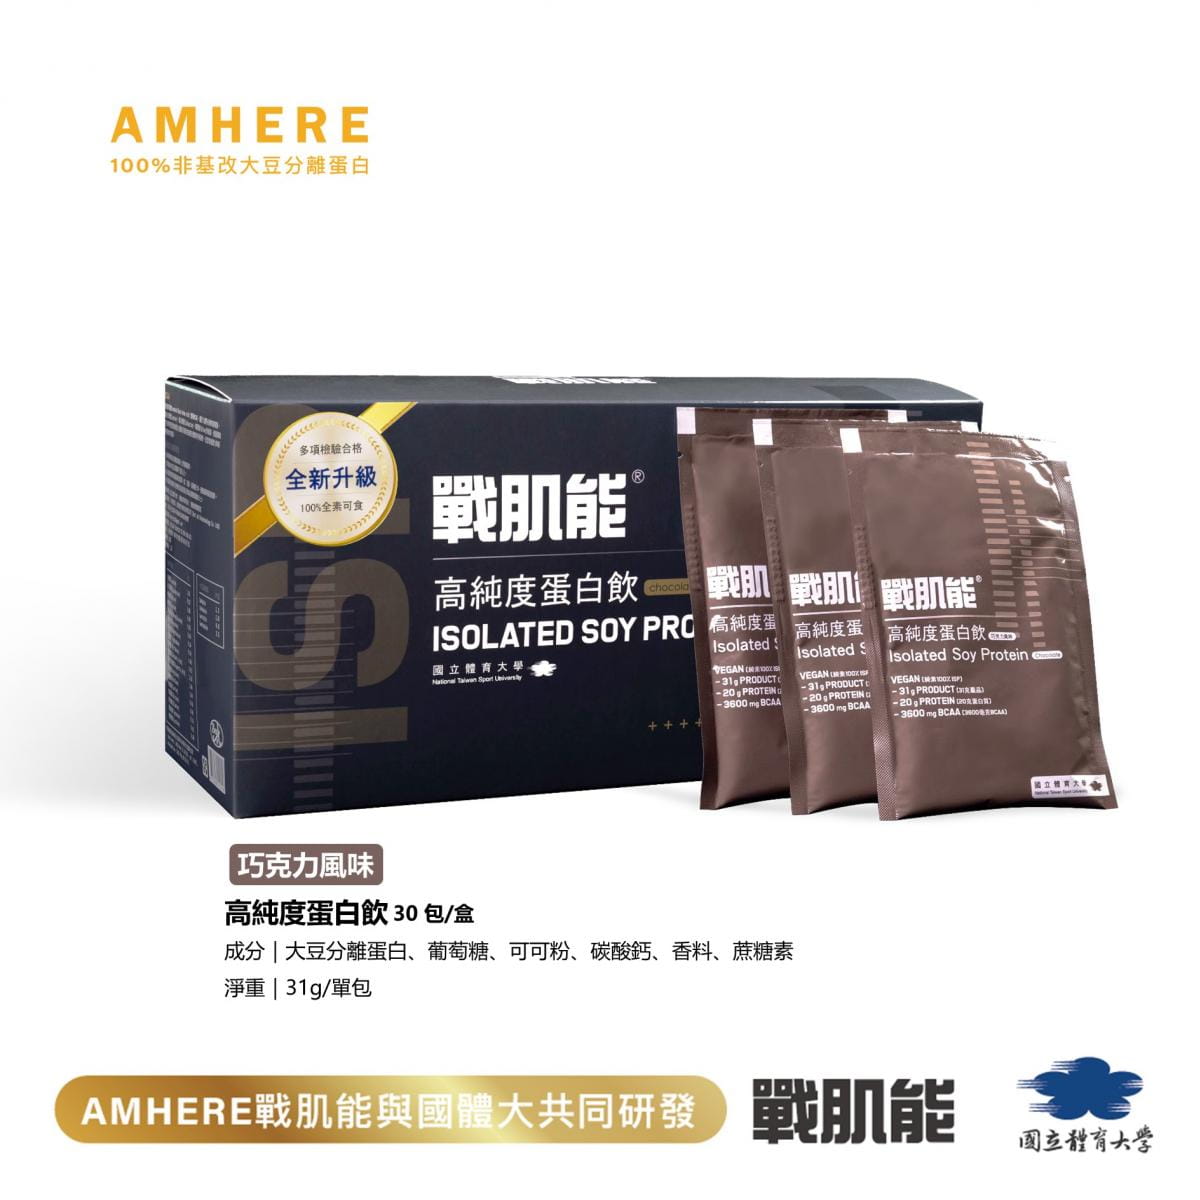 【國體大戰肌能®】大豆分離蛋白|巧克力風味(30入/盒)|現貨原廠直售 0